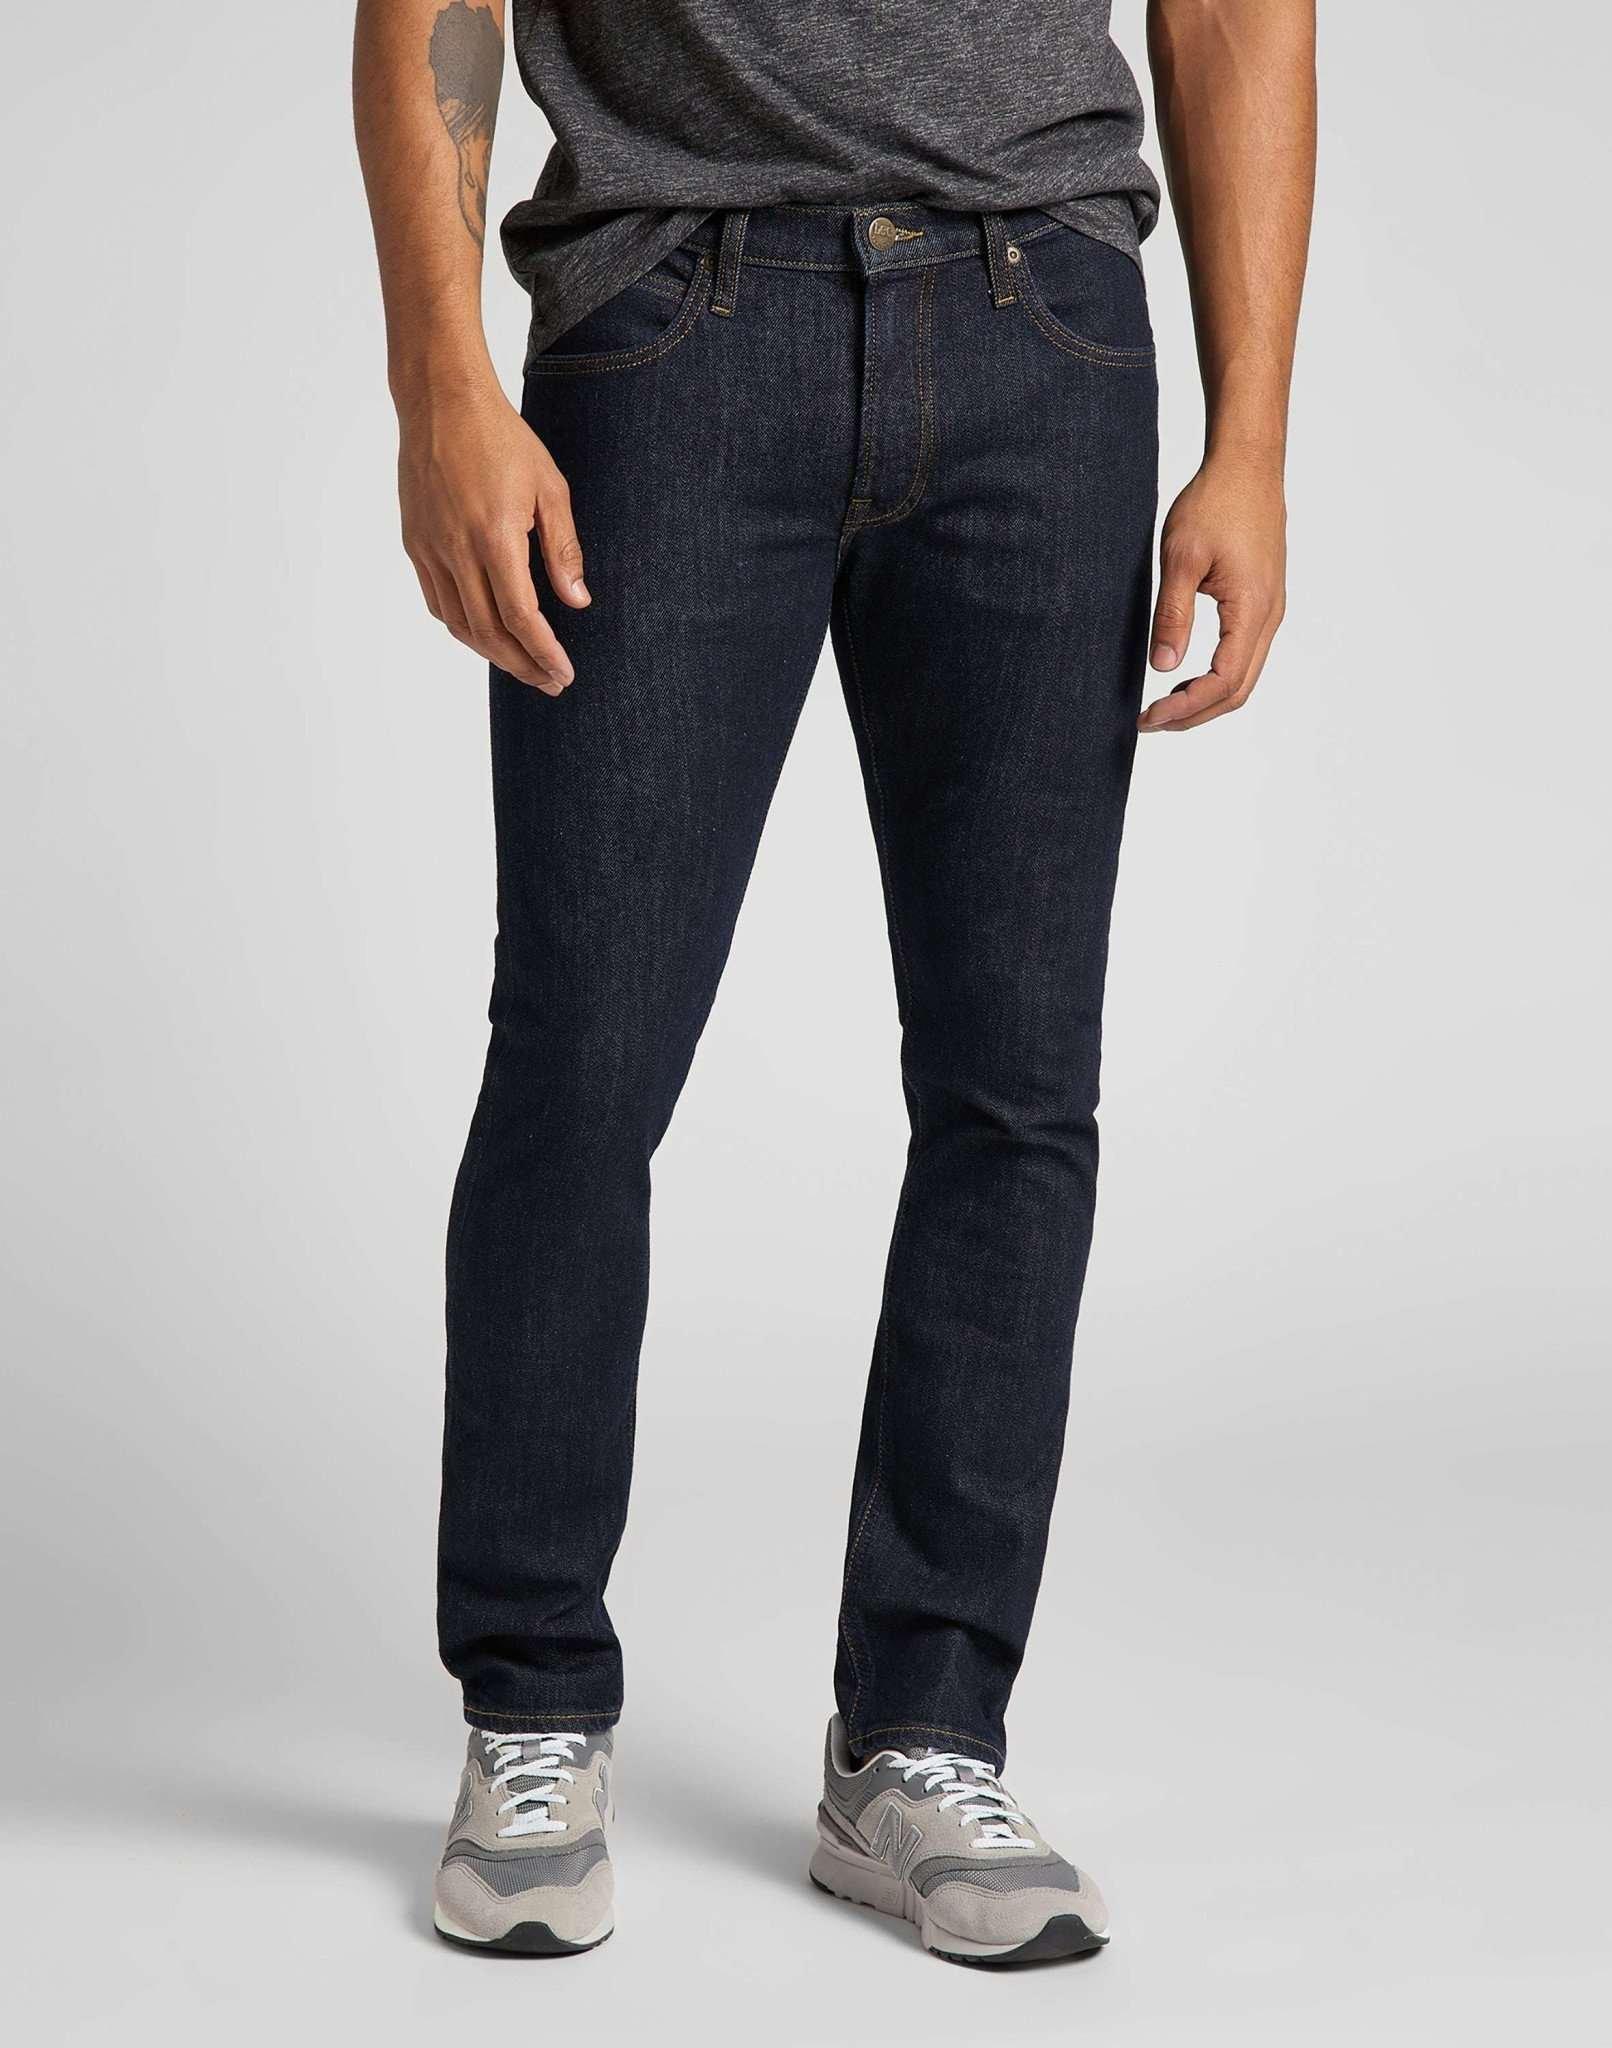 Jeans Slim Fit Luke Herren Blau L30/W33 von Lee